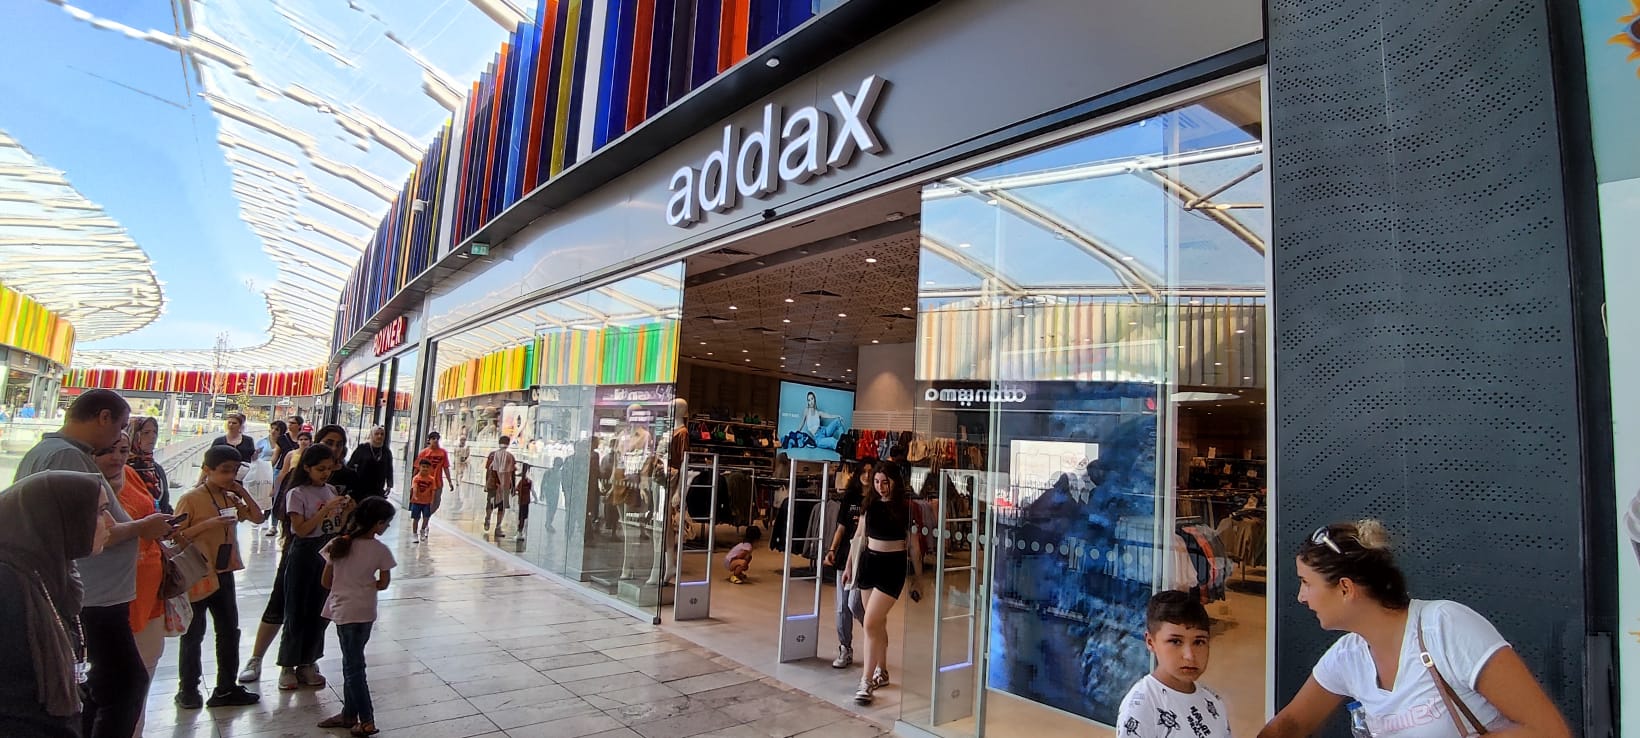 Addax - 30